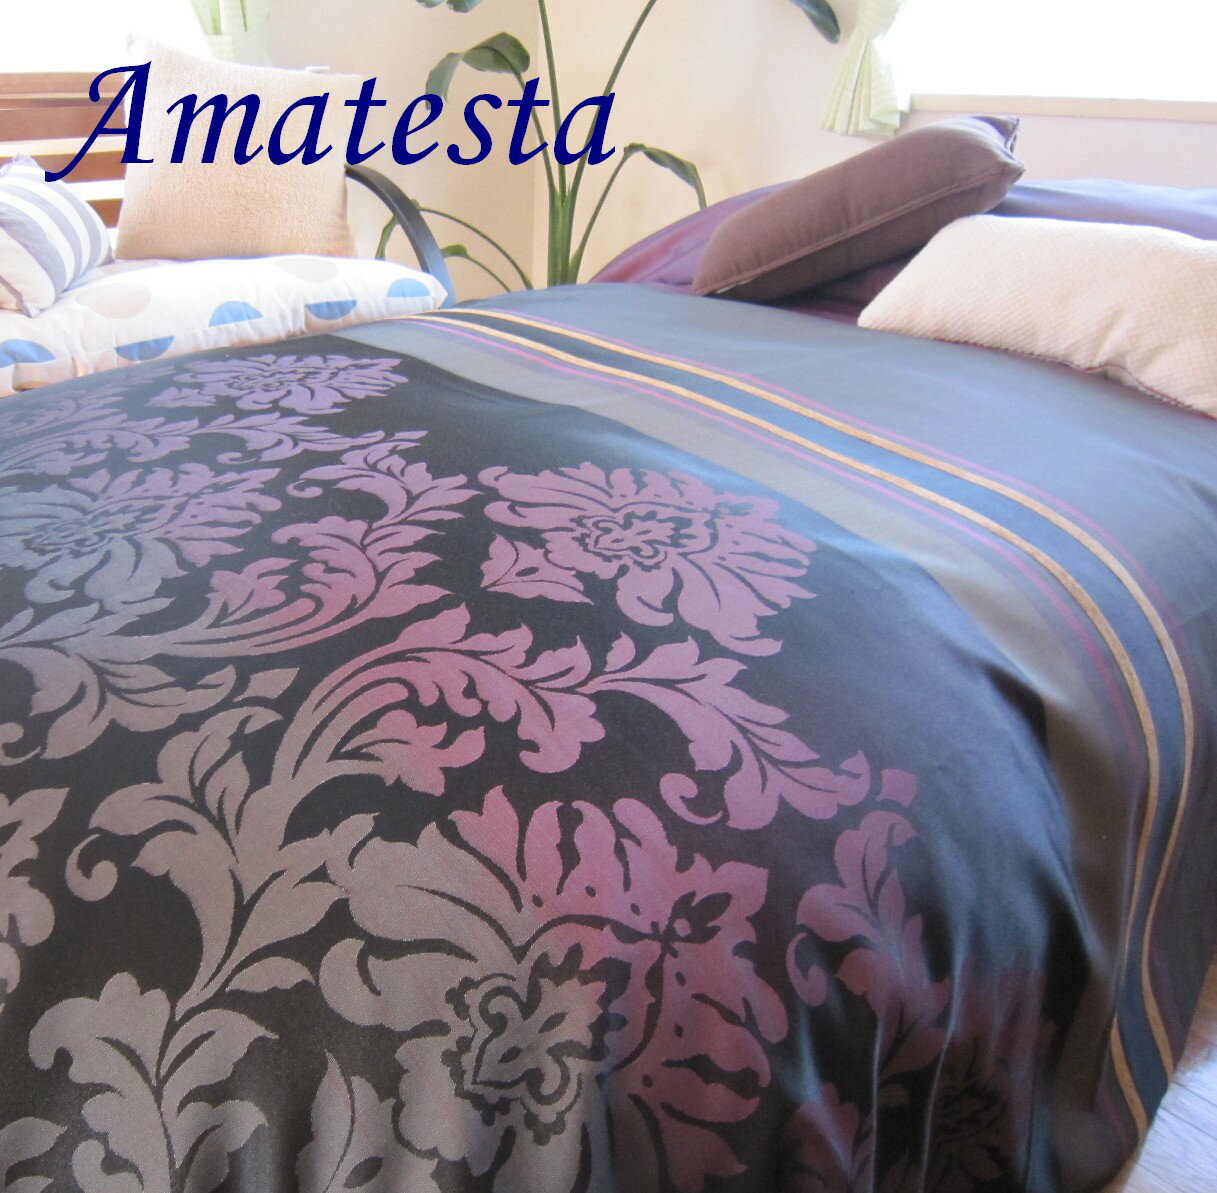 ベッドスプレッド タイスパノ cm kg 仕様 スペイン製 1.7 250×270 ジャガード織 クイーン 超広幅生地デザイン